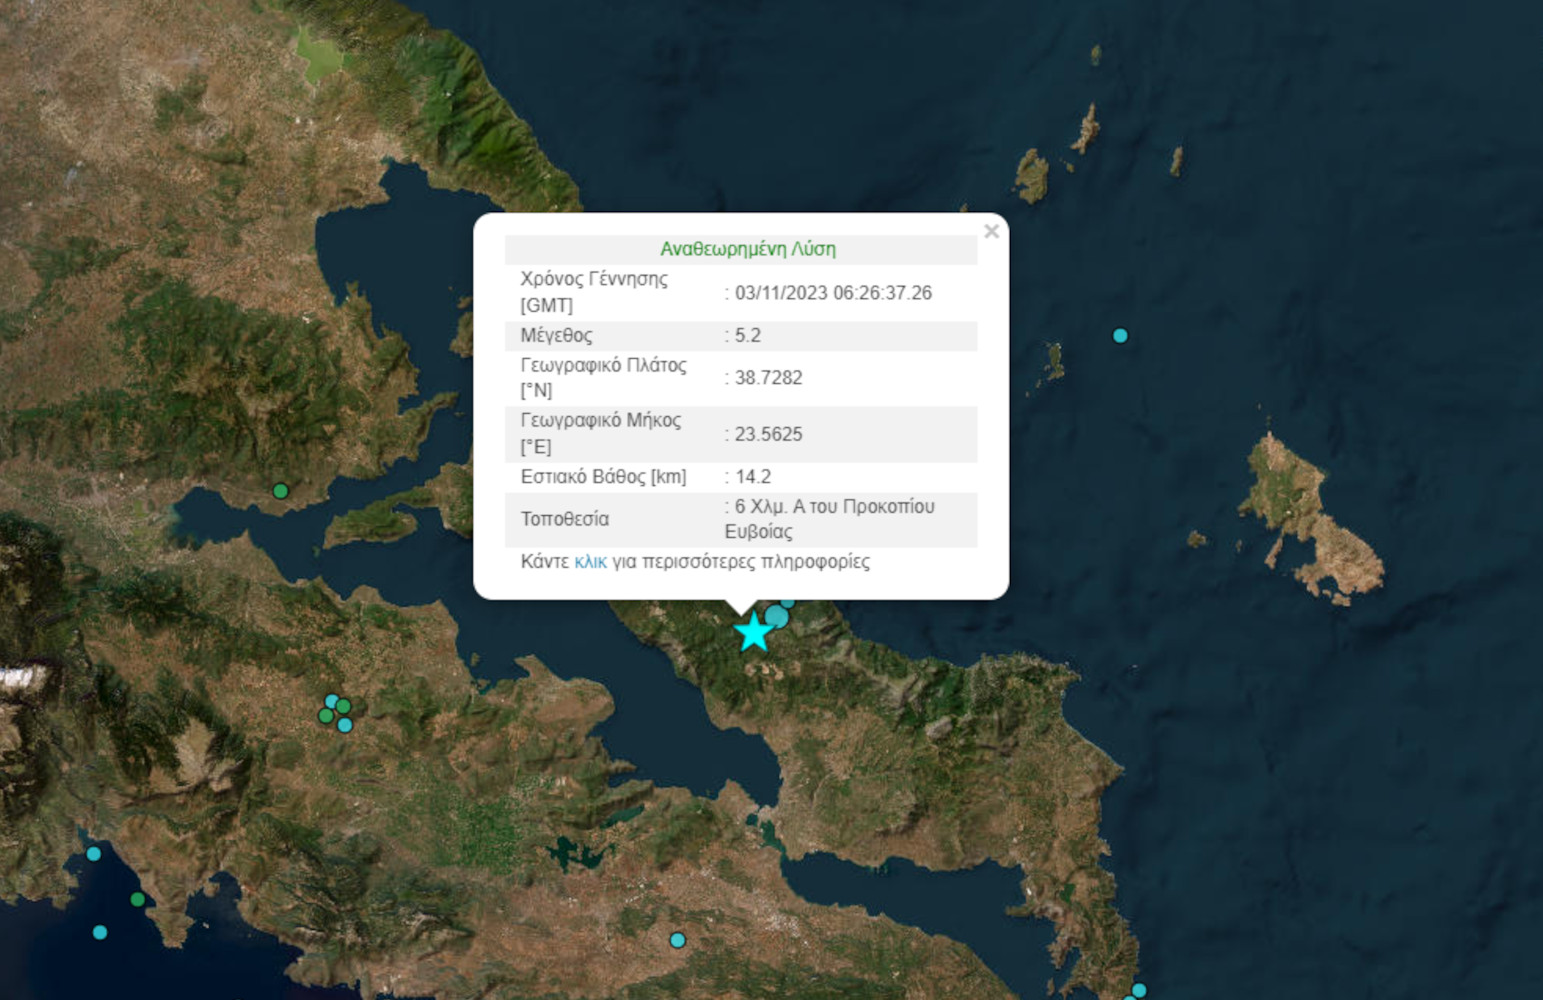 Σεισμός 5,2 Ρίχτερ στην Εύβοια και μετασεισμός 3,7 Ρίχτερ - Ταρακουνήθηκε και η Αθήνα